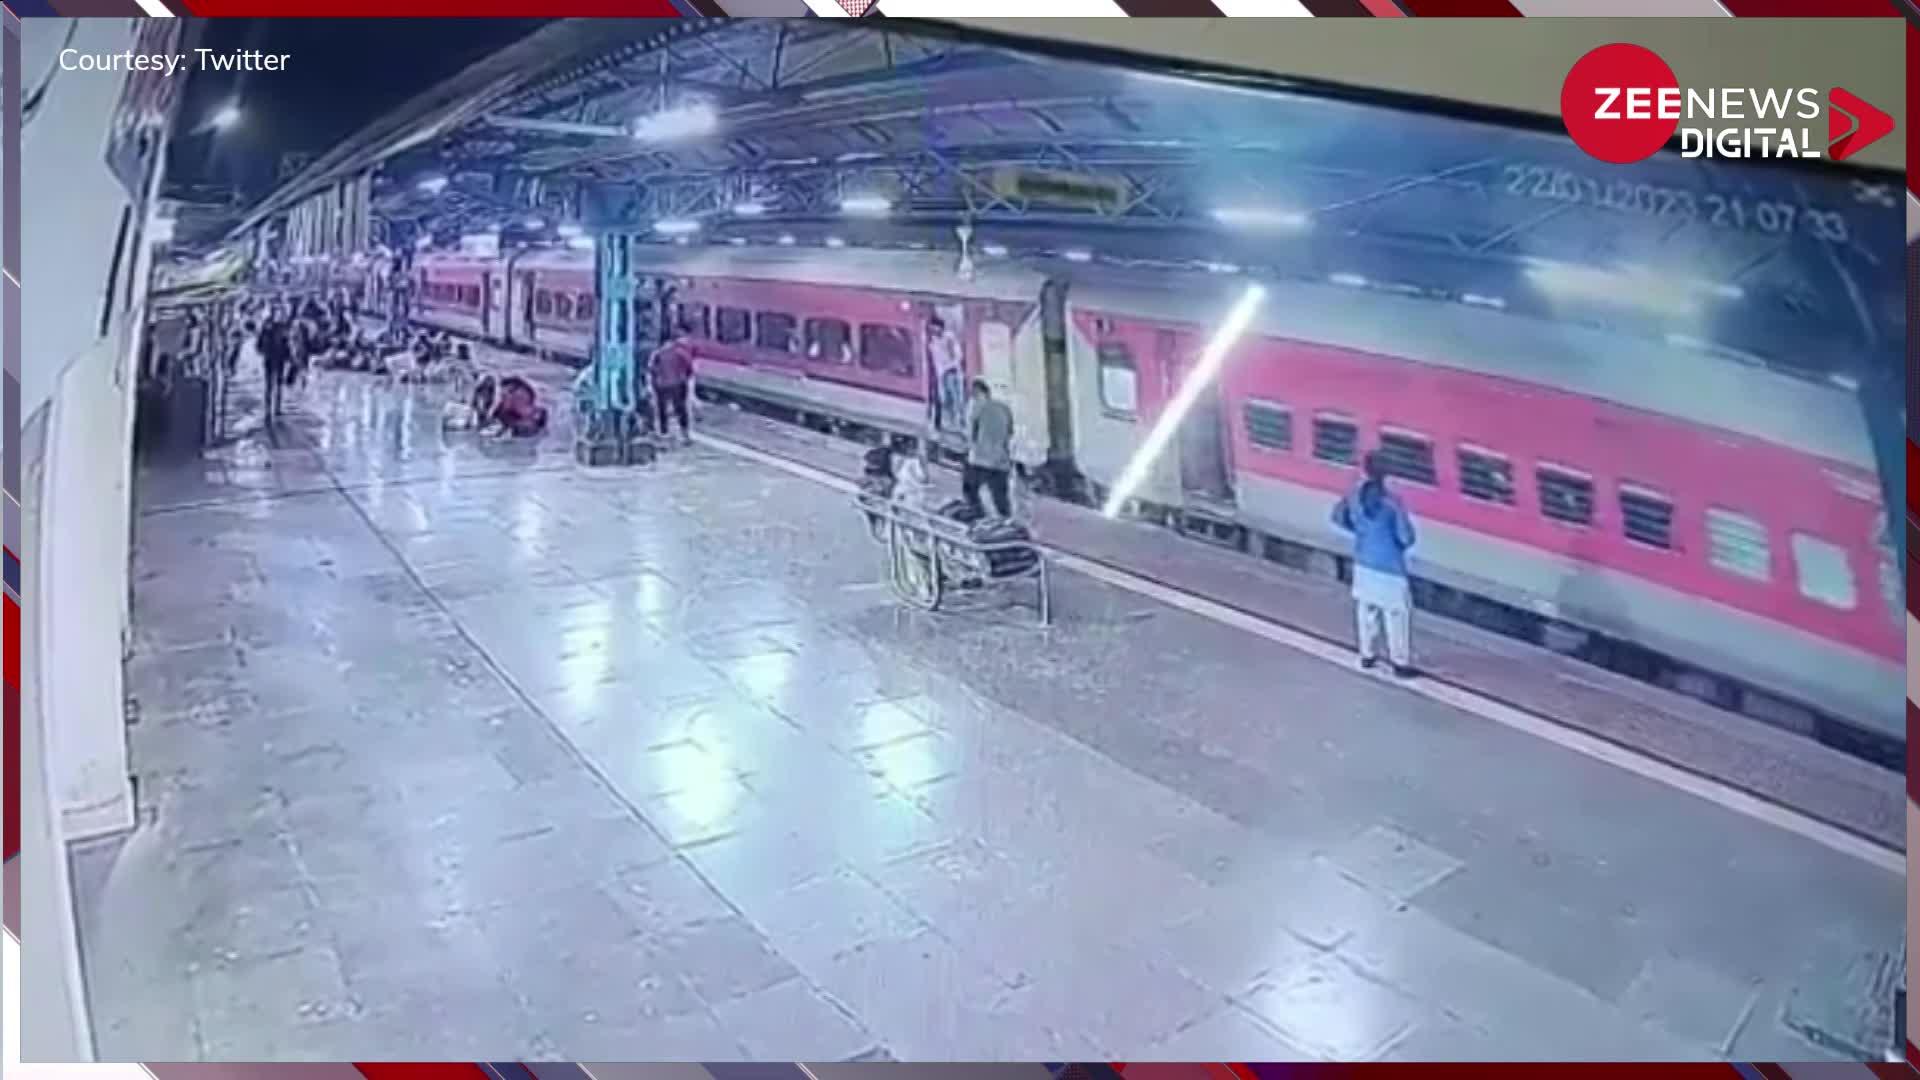 चलती ट्रेन पर चढ़ रहा था शख्स, तभी अचानक हुआ कुछ ऐसा की CCTV फुटेज हो गया वायरल